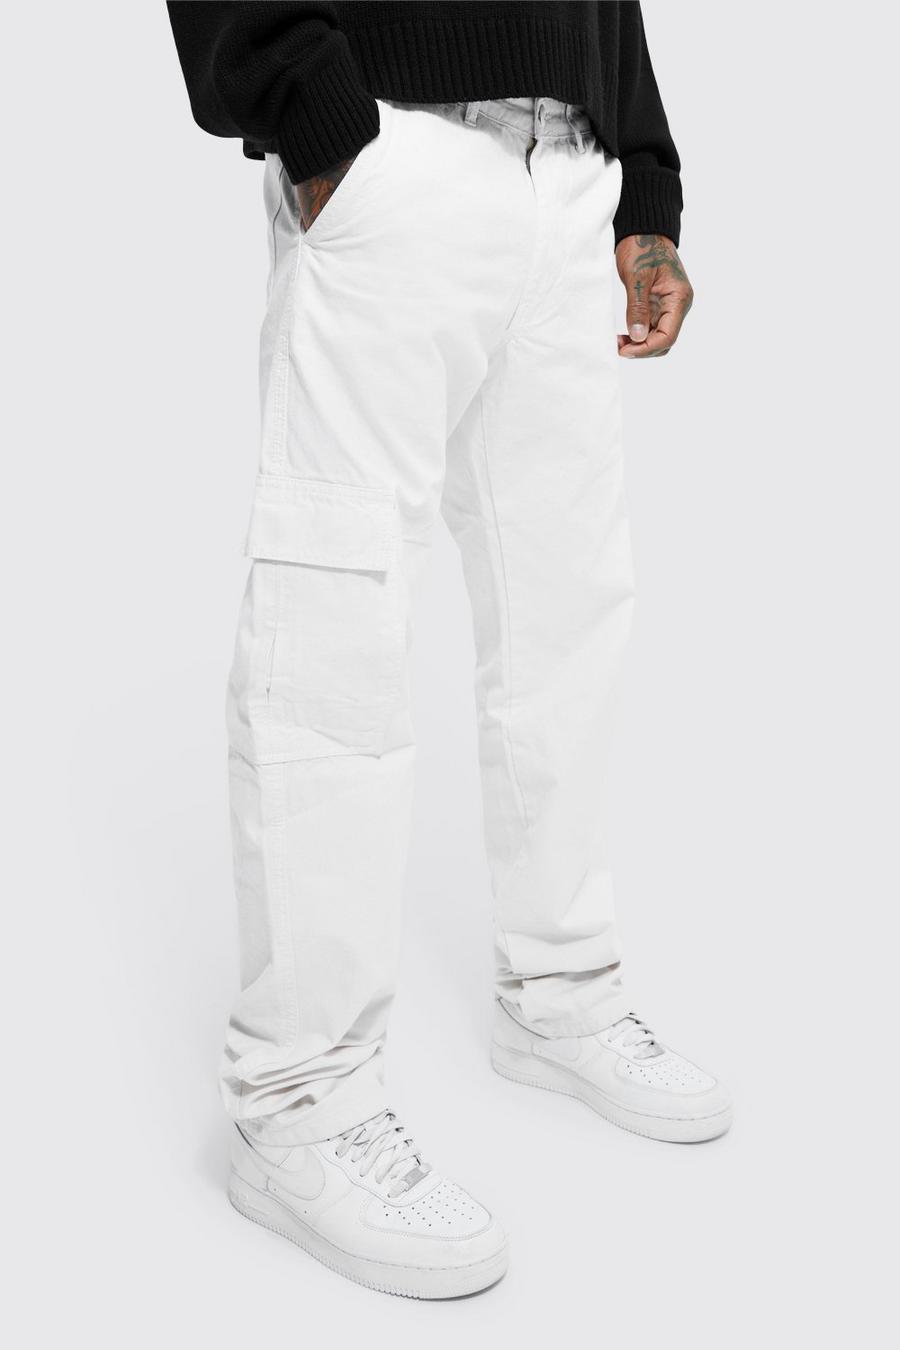 שמנת blanco מכנסי דגמ'ח בגזרה ישרה עם אפקט נערם ורצועת מותניים מקובעת